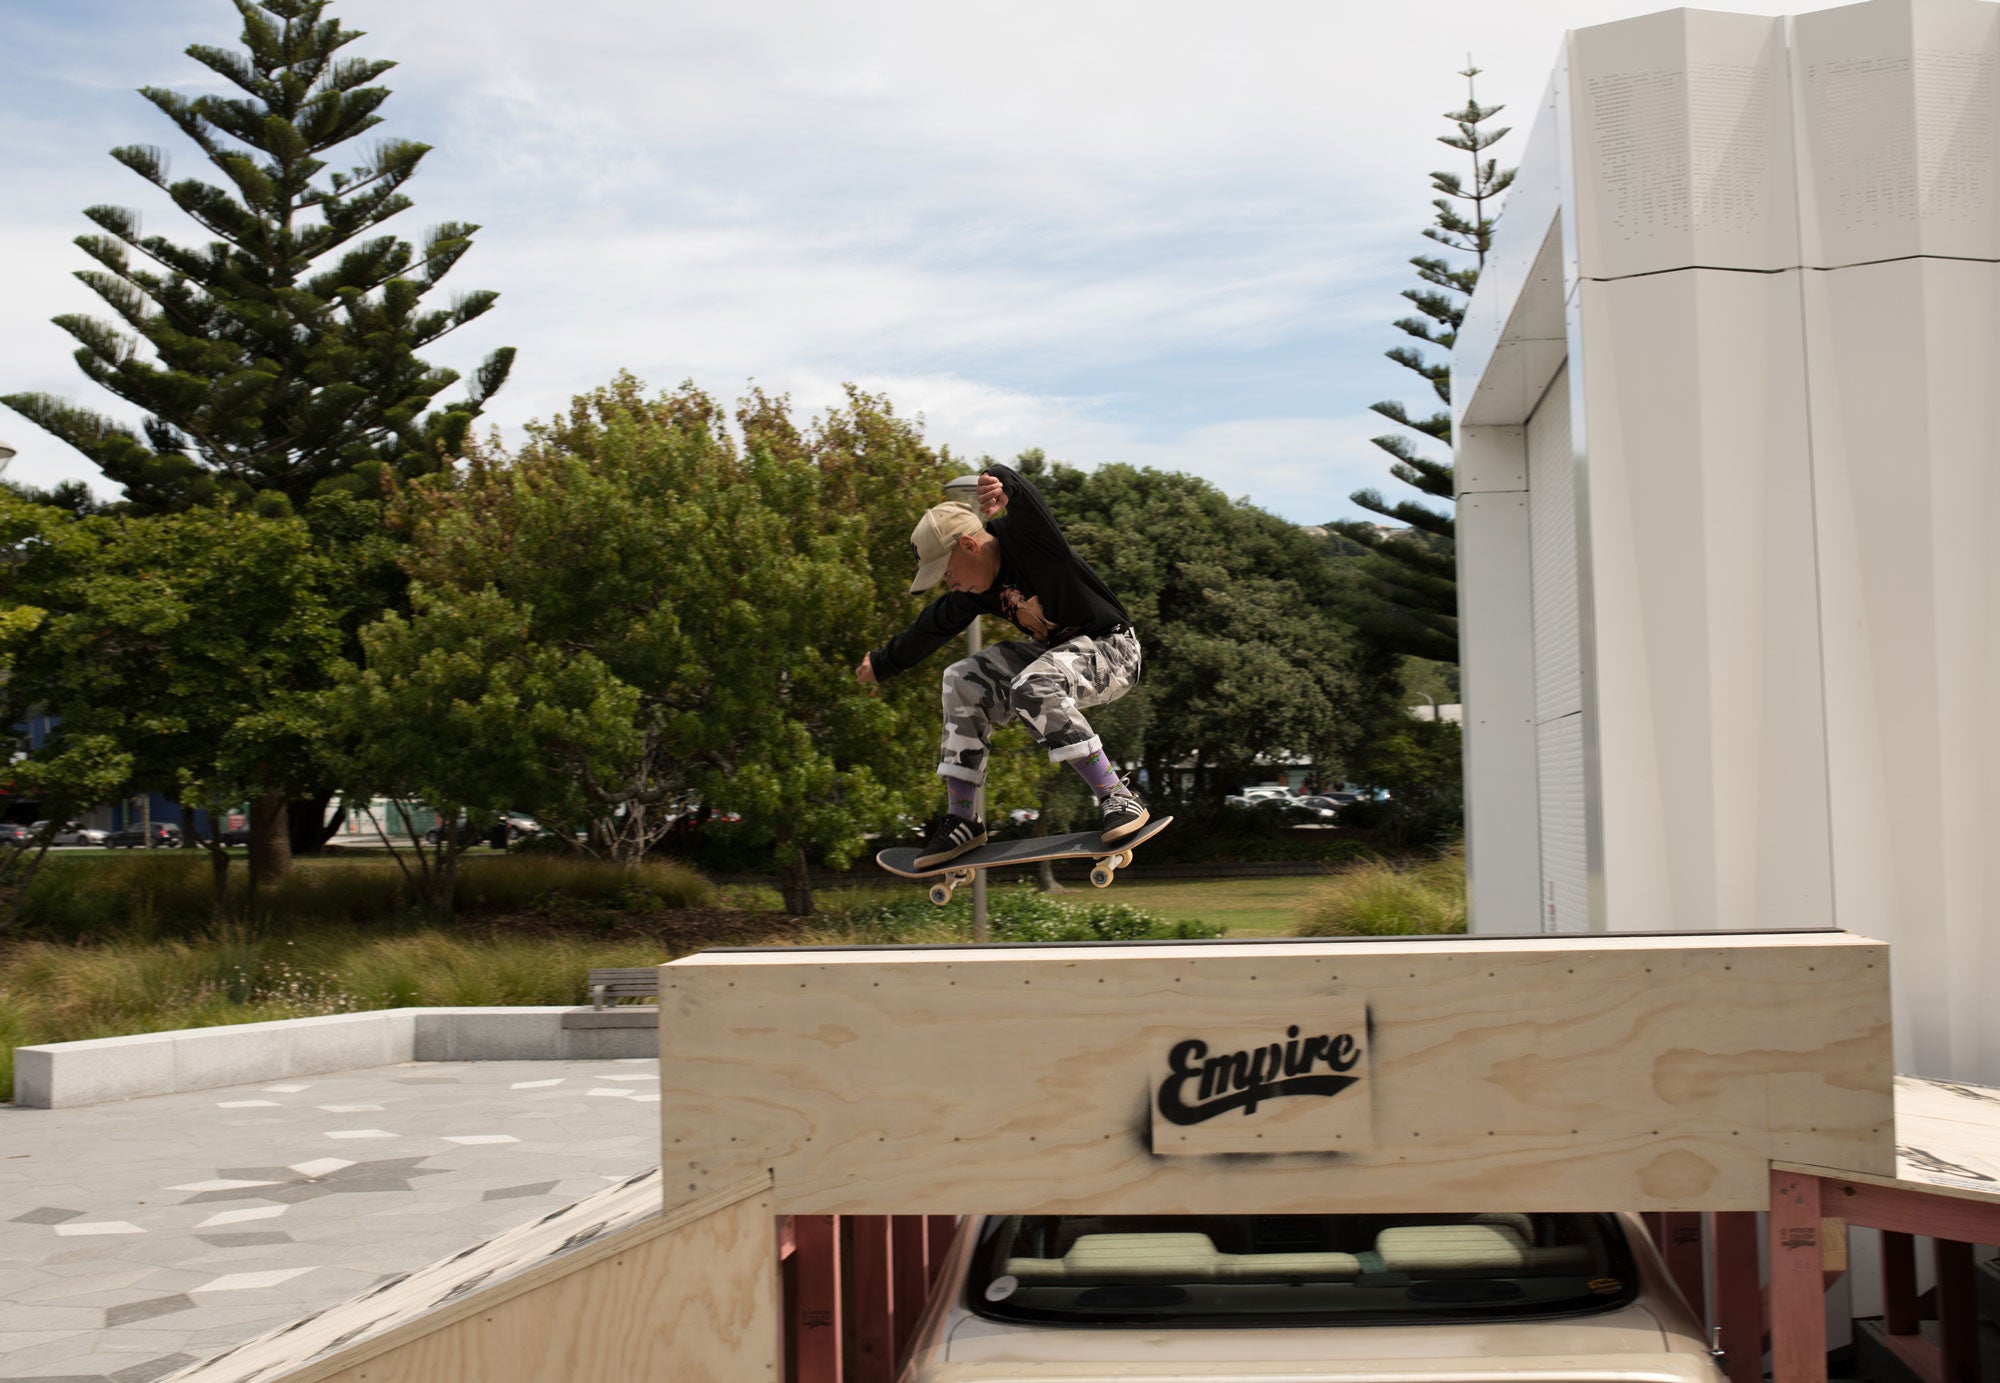 skateboarder on empire ramp